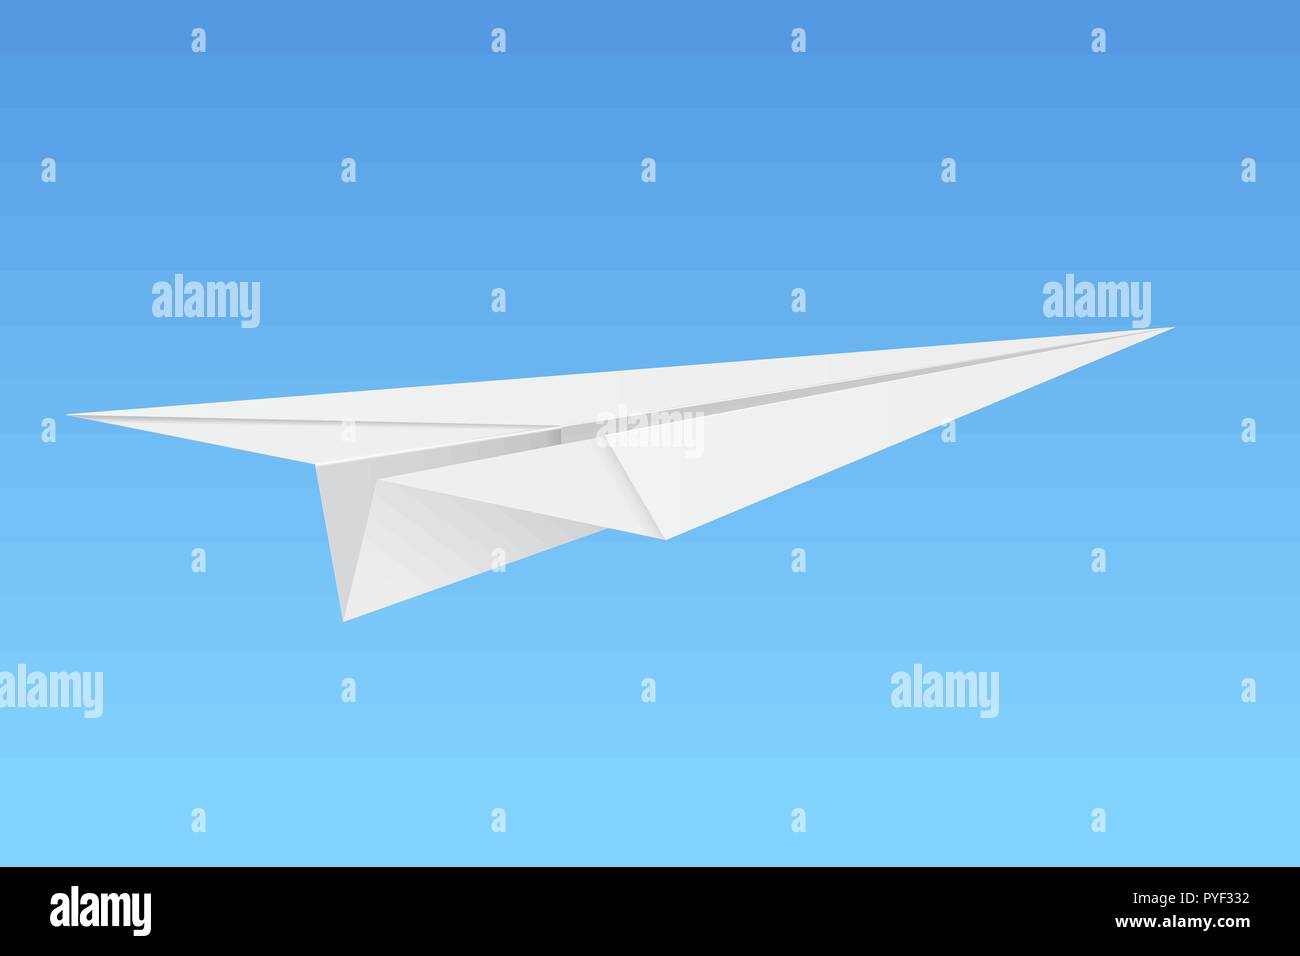 Avion en papier sur fond bleu Illustration de Vecteur